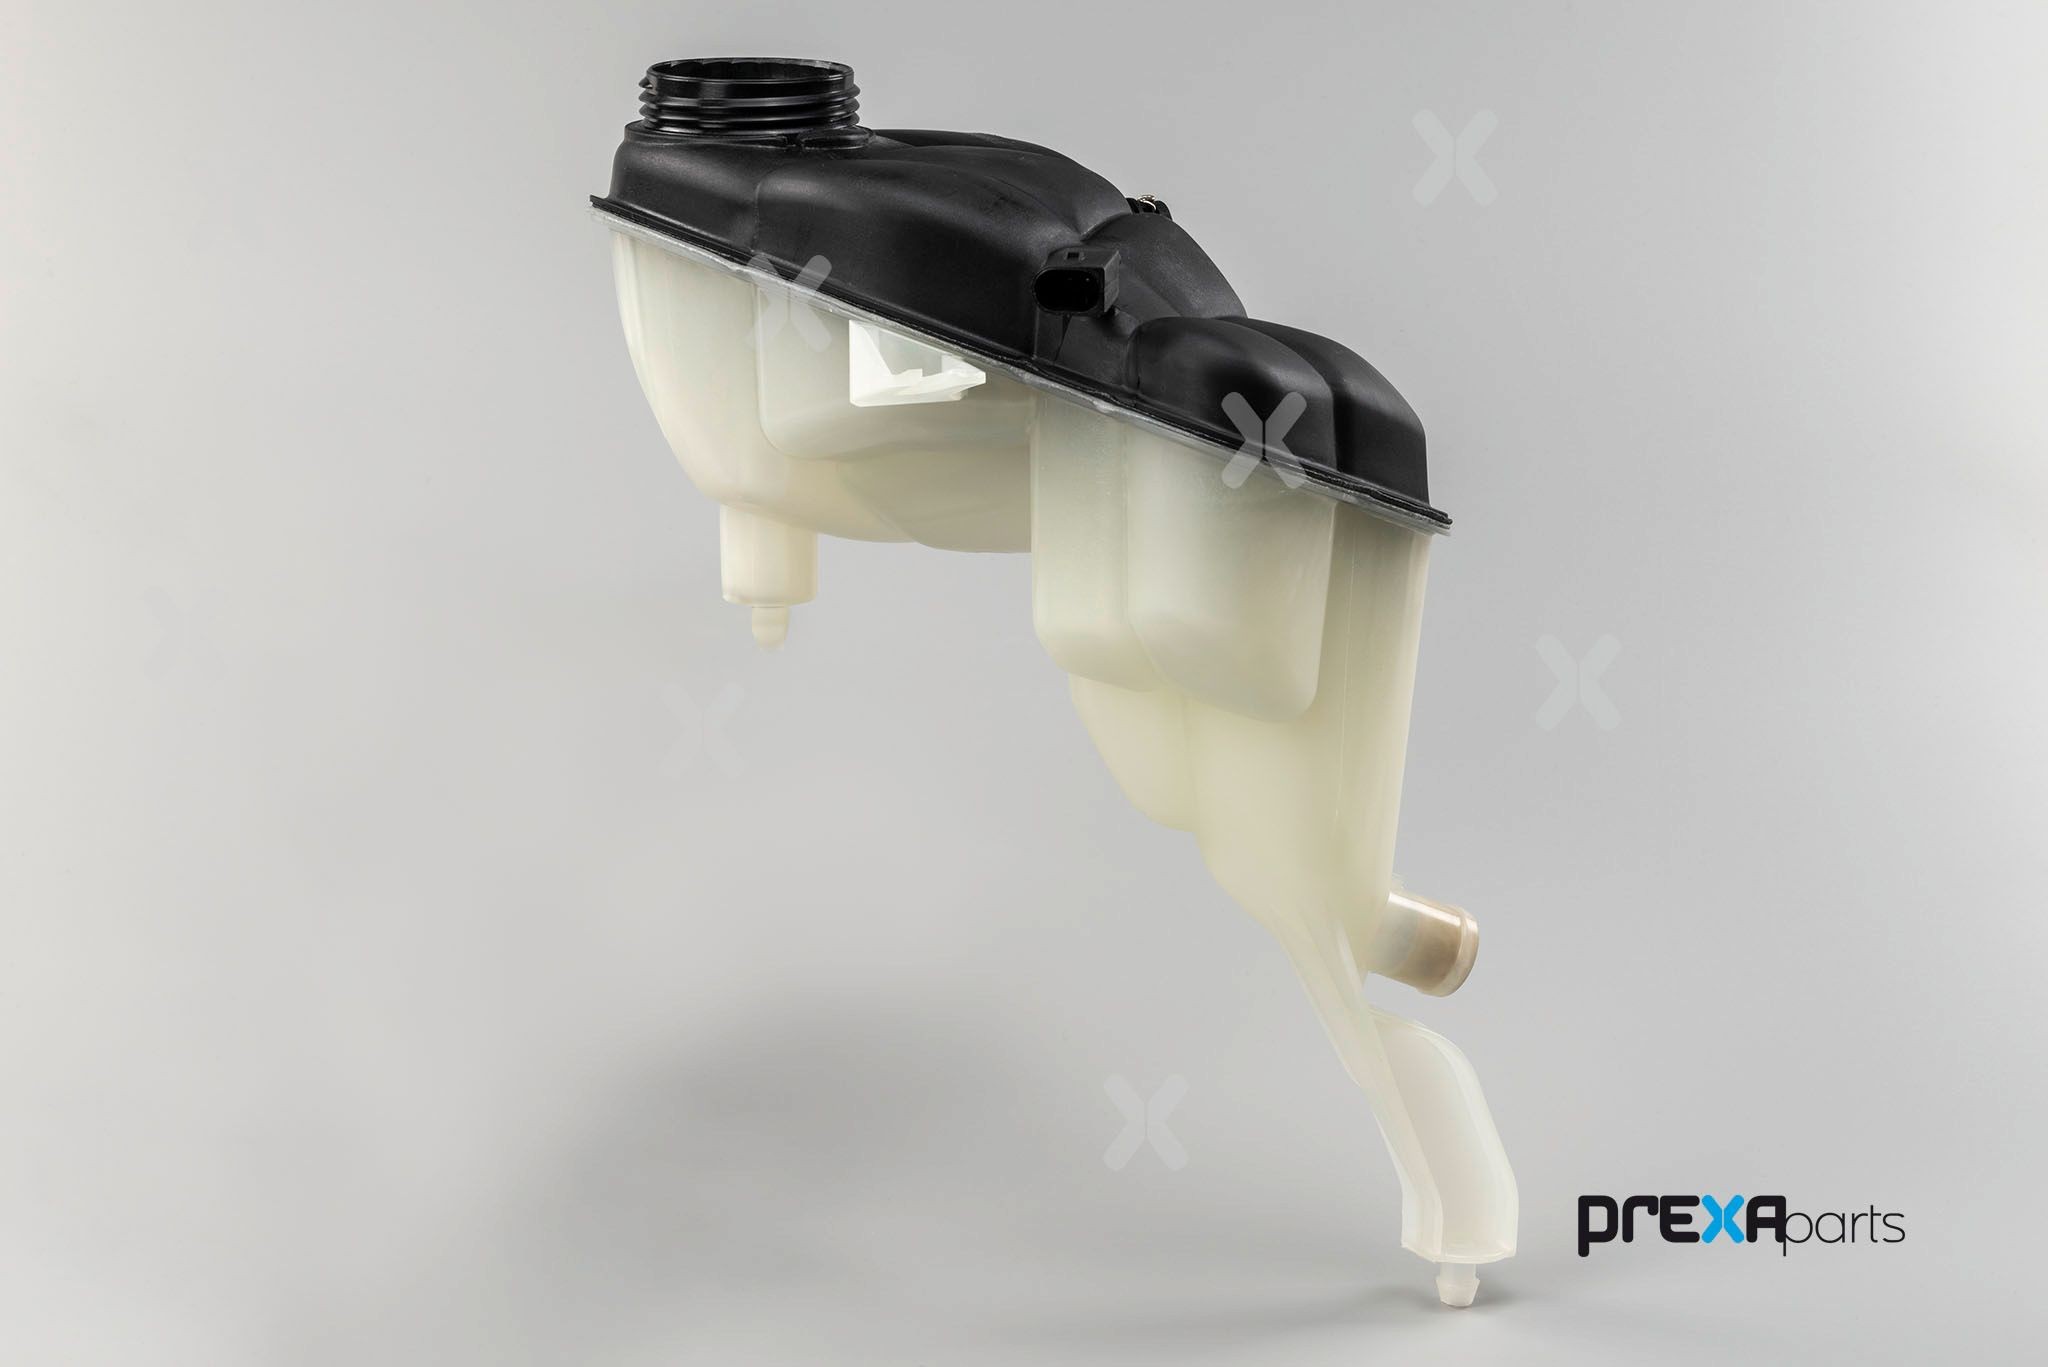 PREXAparts Coolant reservoir P327015 suitable for MERCEDES-BENZ S-Class